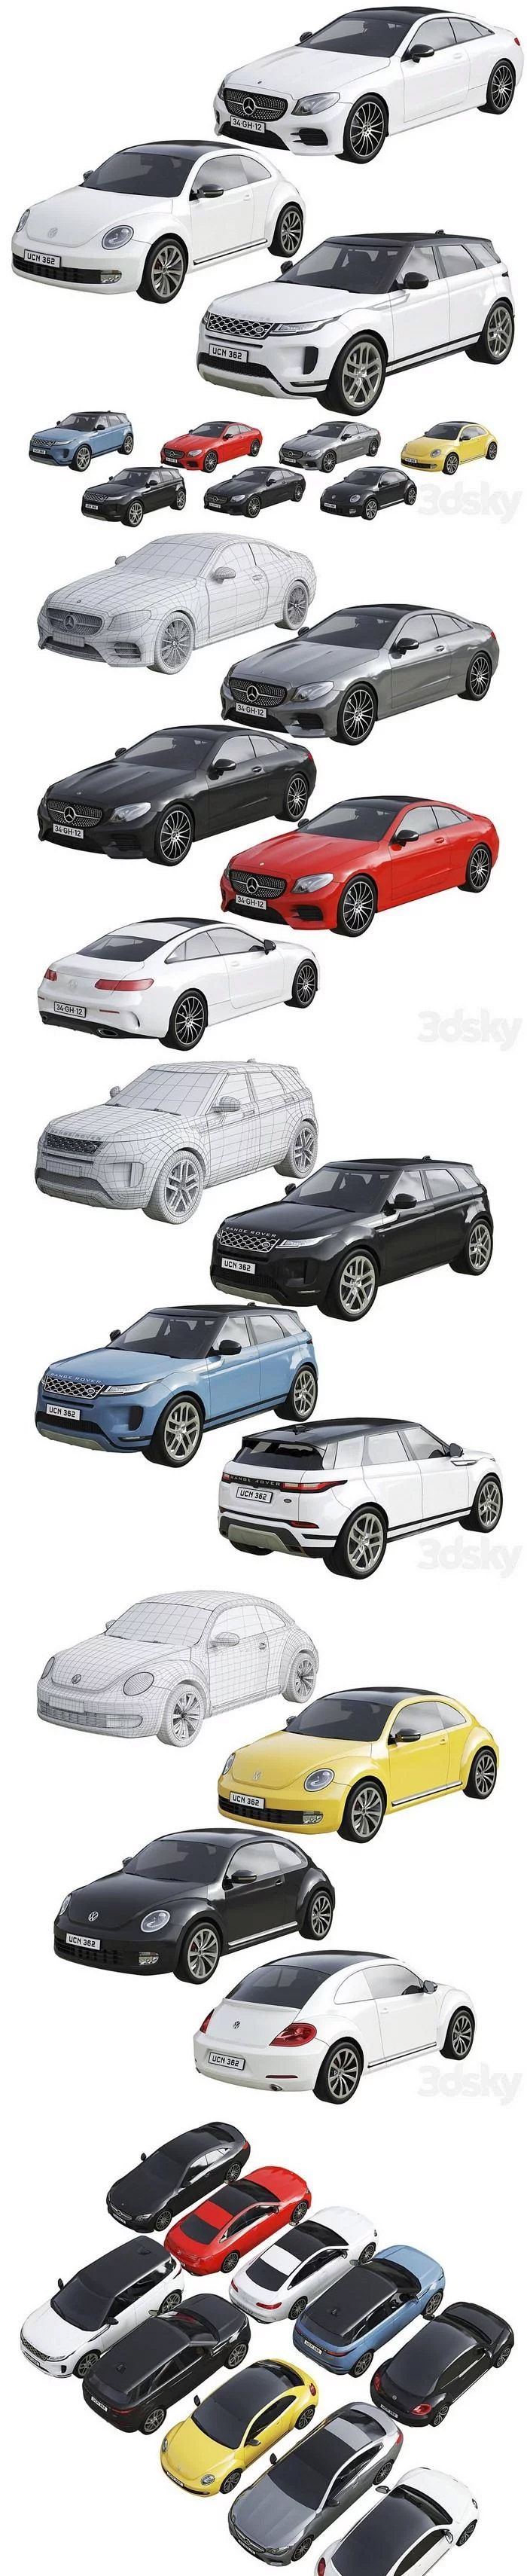 各种品牌汽车3D模型大集合-MAX | FBX | OBJ插图